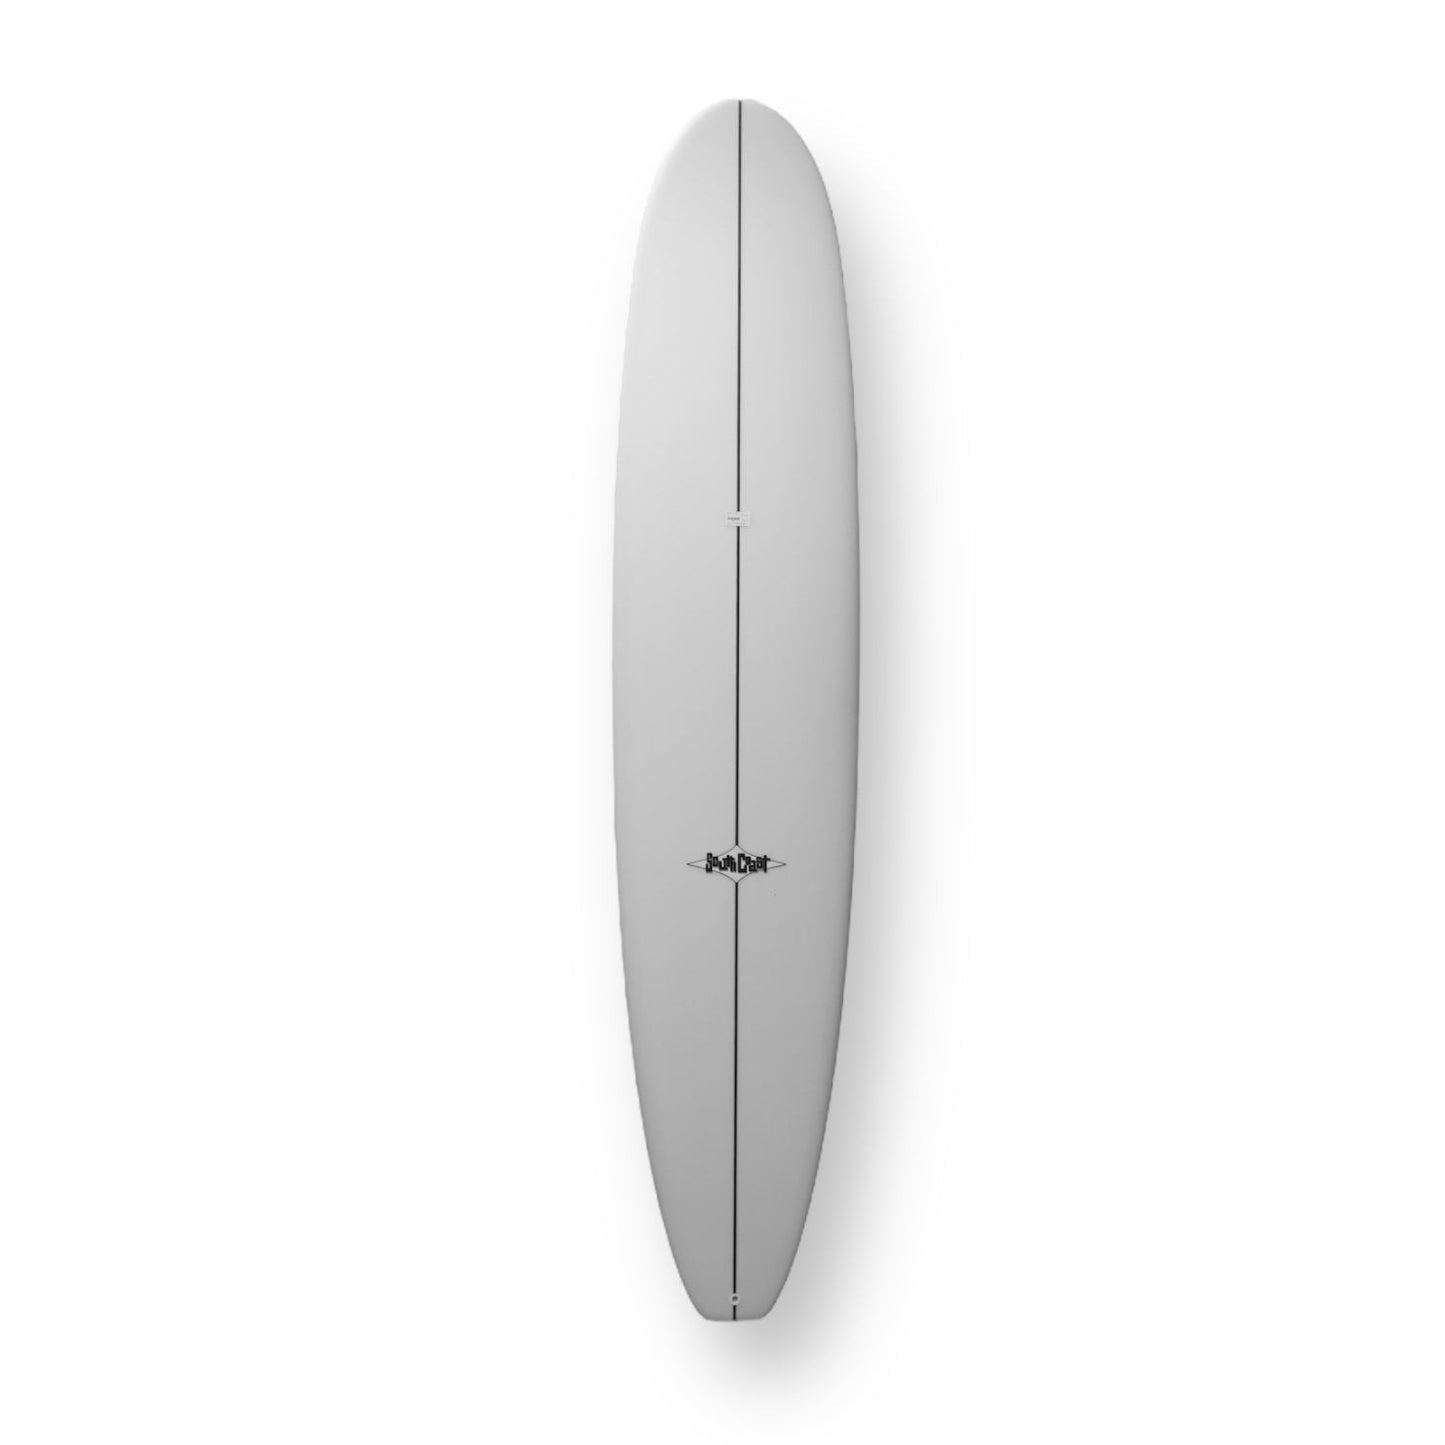 SOUTH COAST CR3 9'2" SURFBOARD